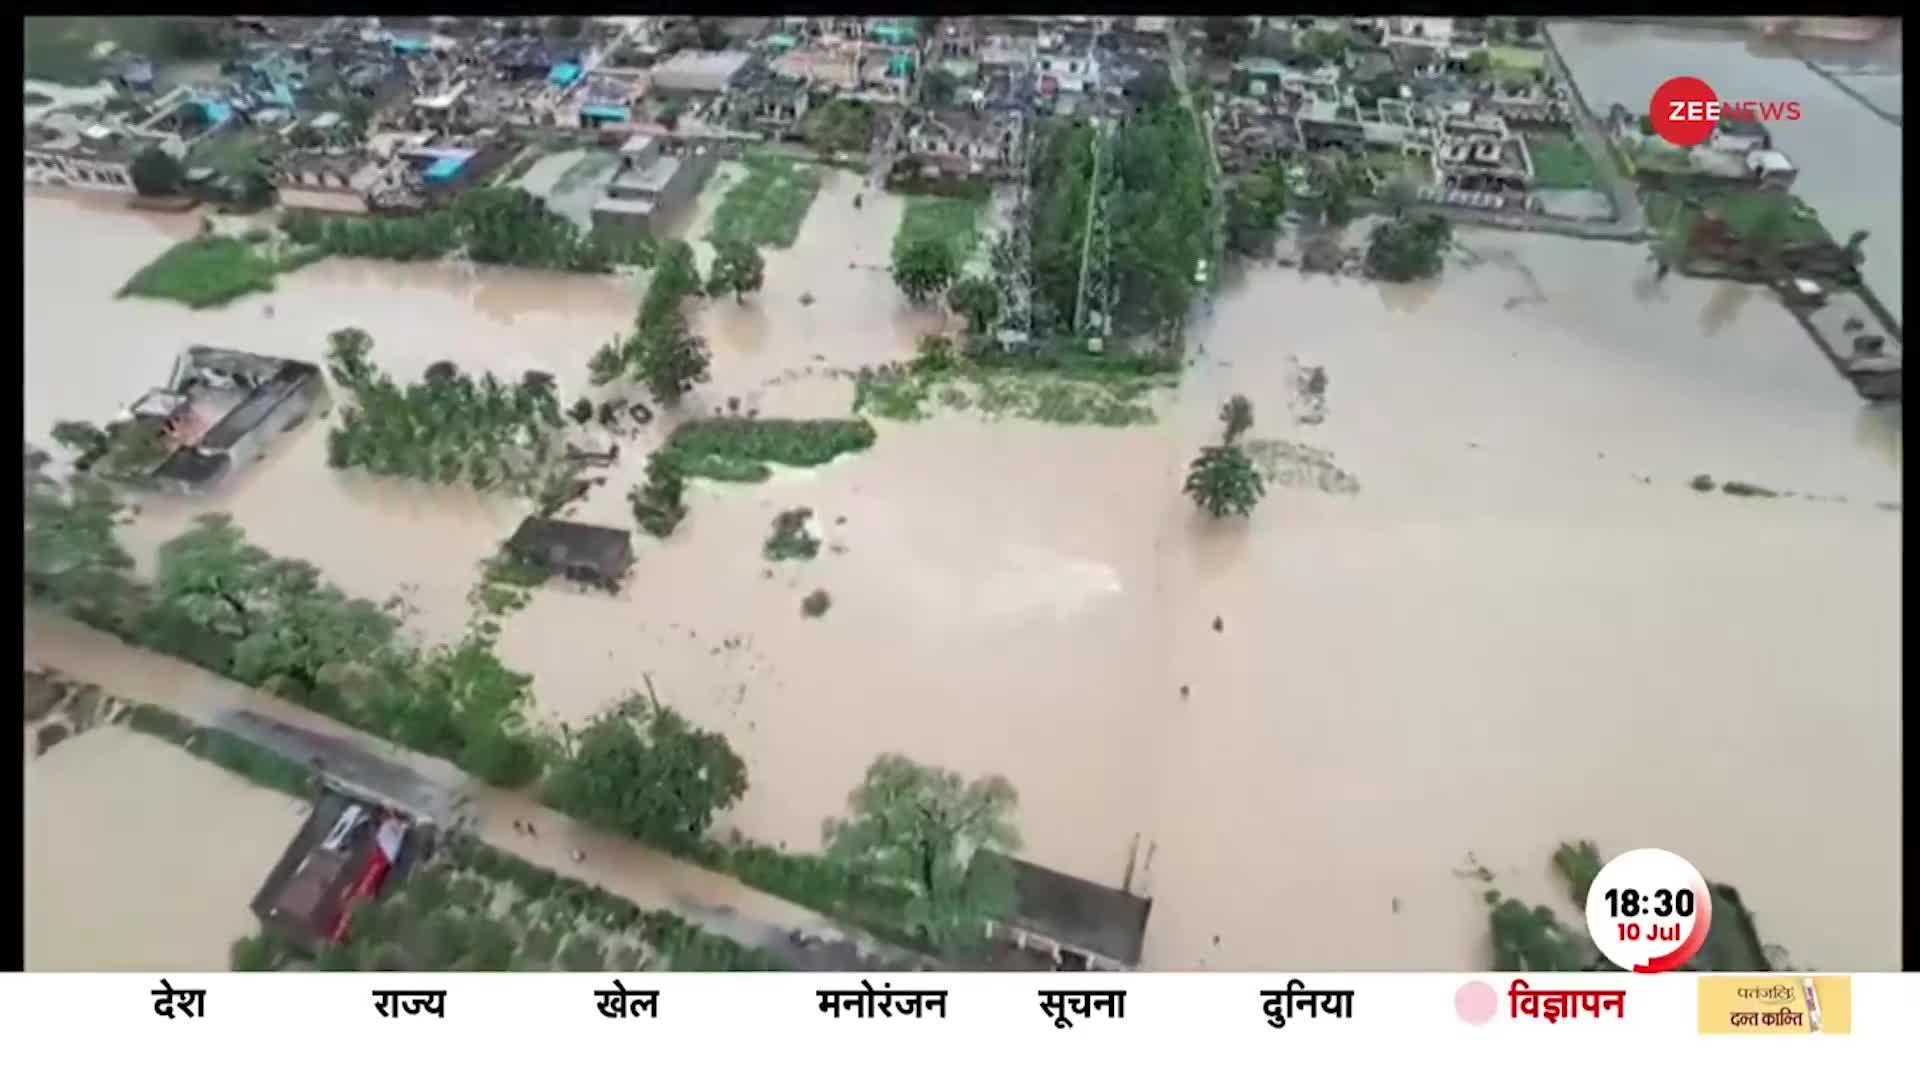 Deshhit: पुल टूटे, बसे बहीं, बारिश-बाढ़ ने मचाई तबाही Himachal Pradesh में प्रलय का हाहाकार। Weather